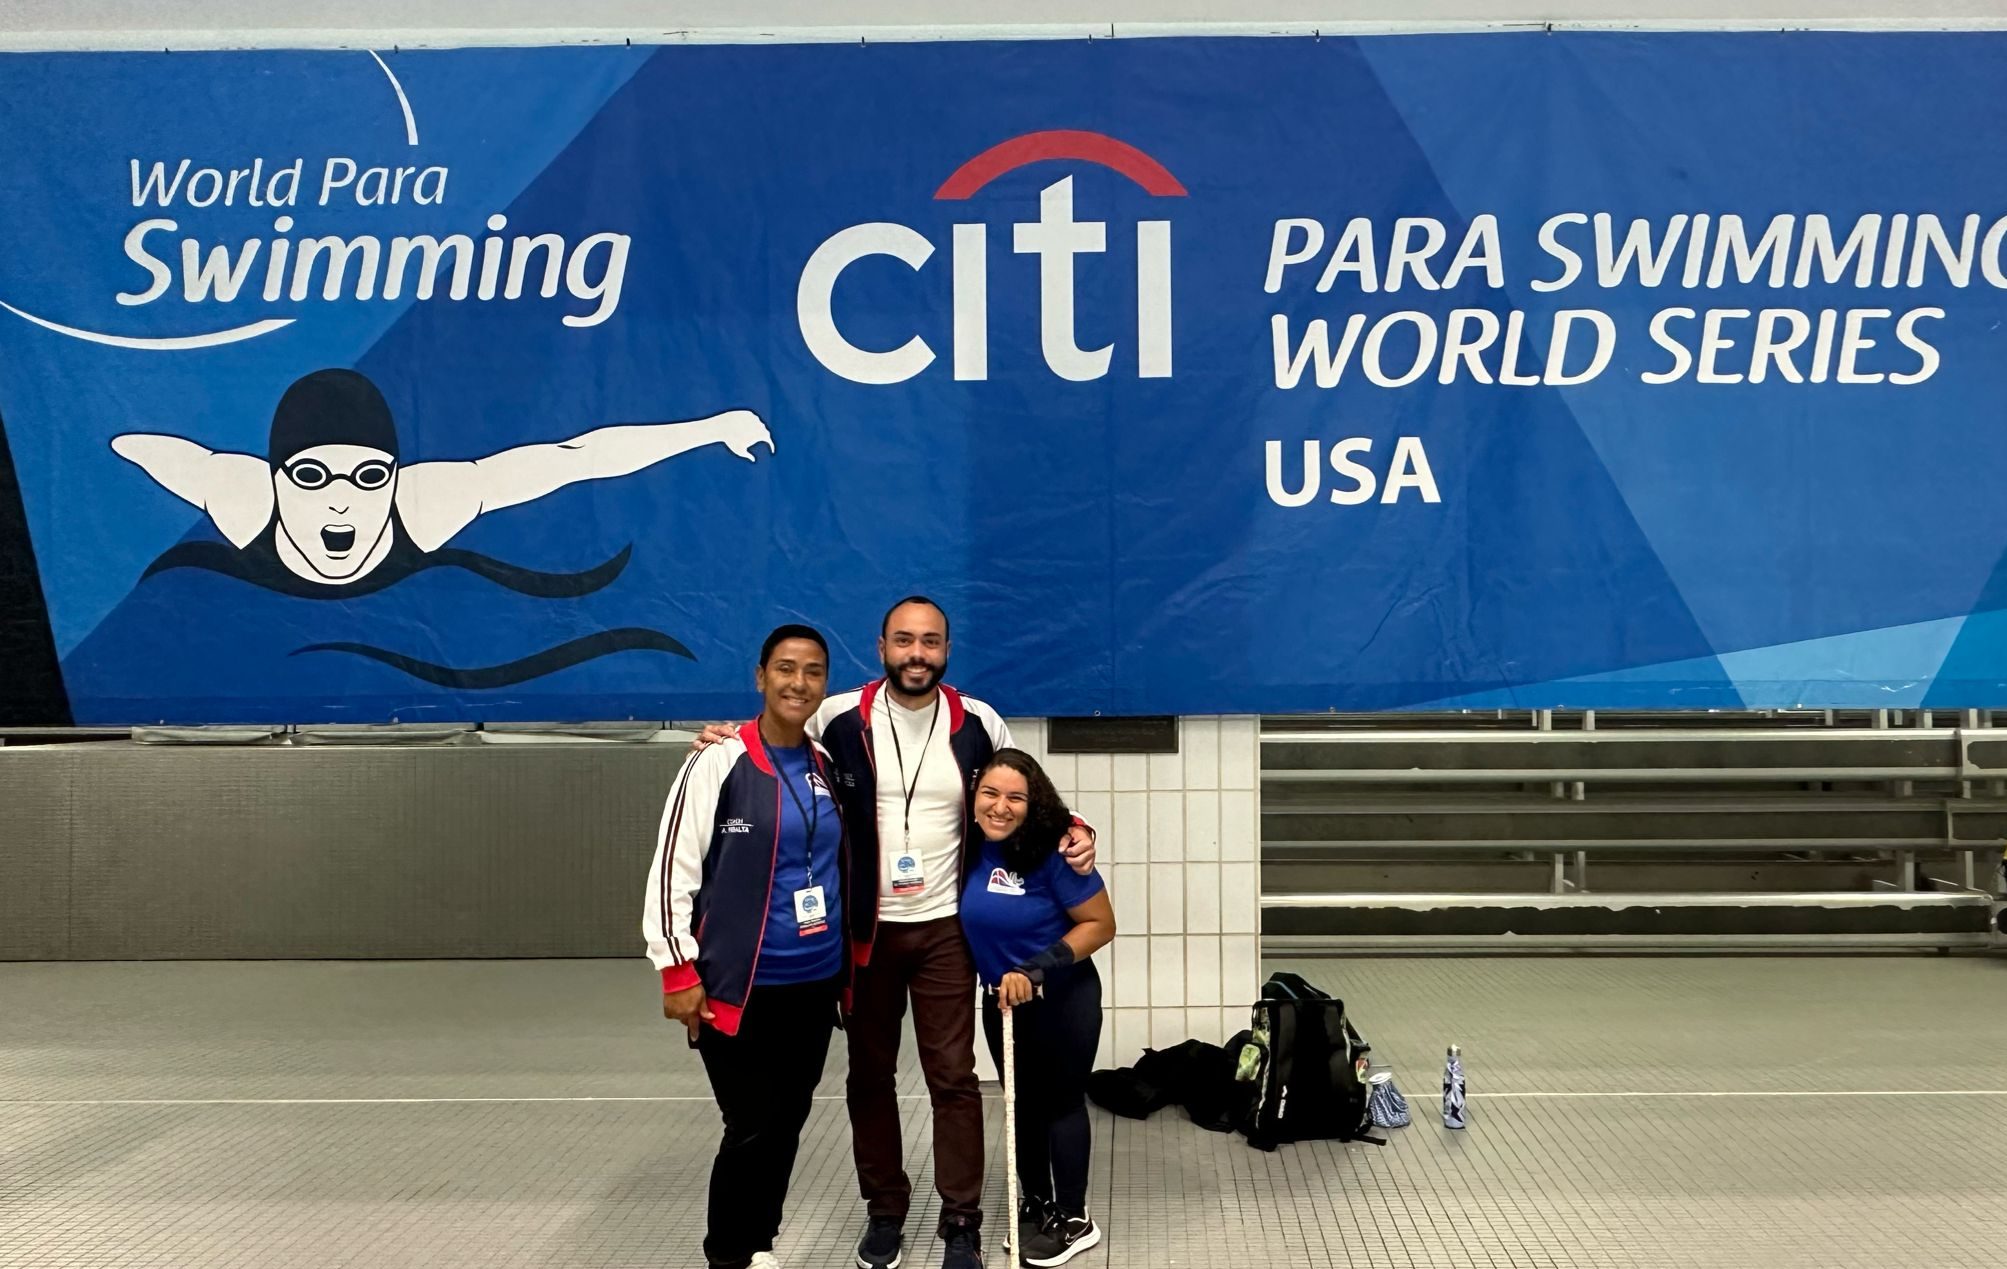 De izquierda a derecha, Ana María Peralta, entrenadora nacional paralímpica, el doctor Francisco De la Rosa y la para nadadora Alejandra Aybar en el evento. (Crédito: Suministrada por la para atleta)